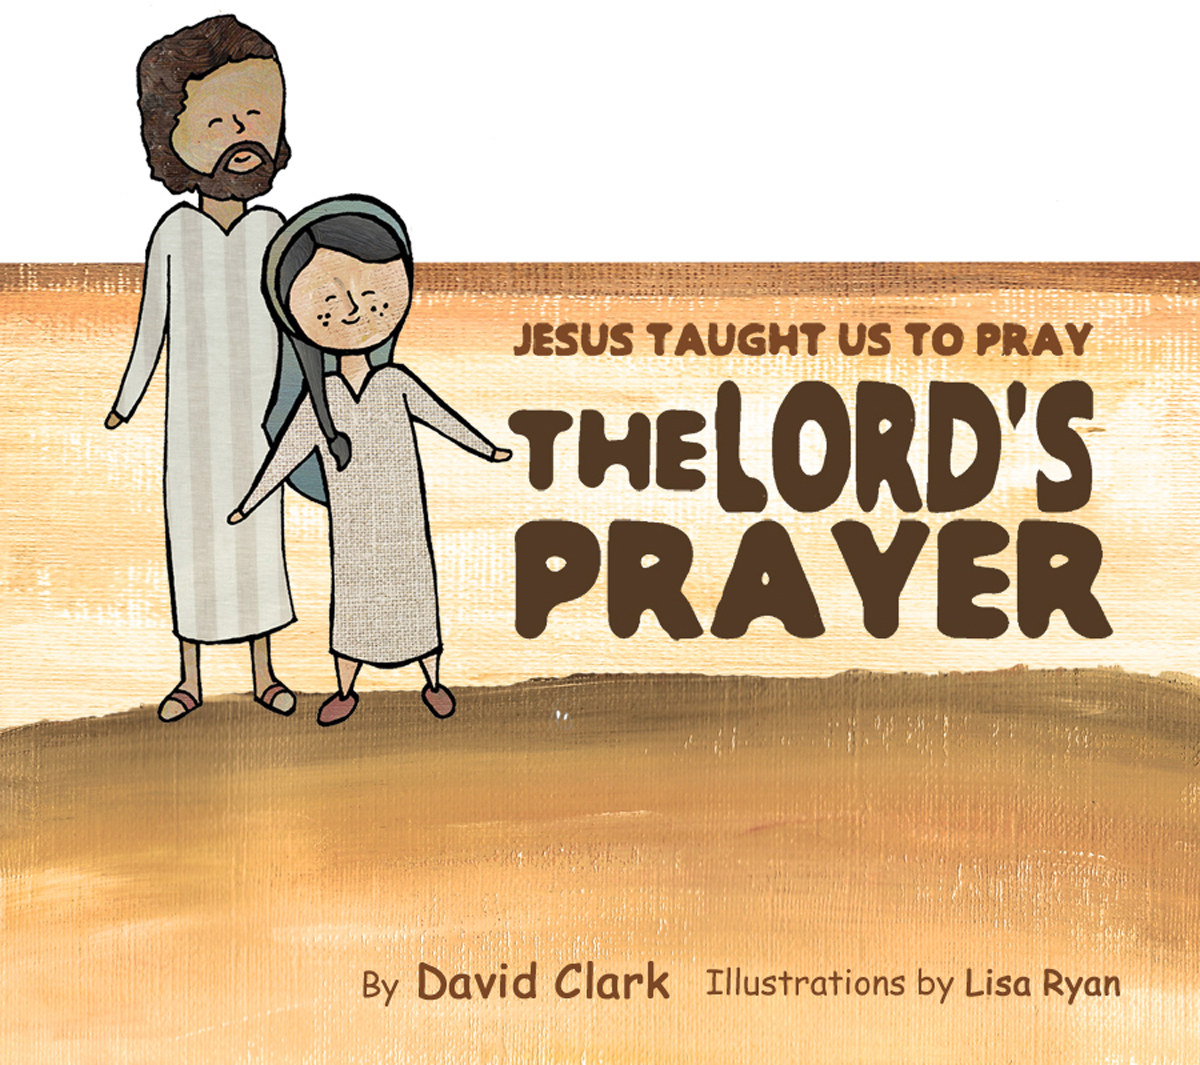 Jesus Taught us to Pray the Lord's Prayer